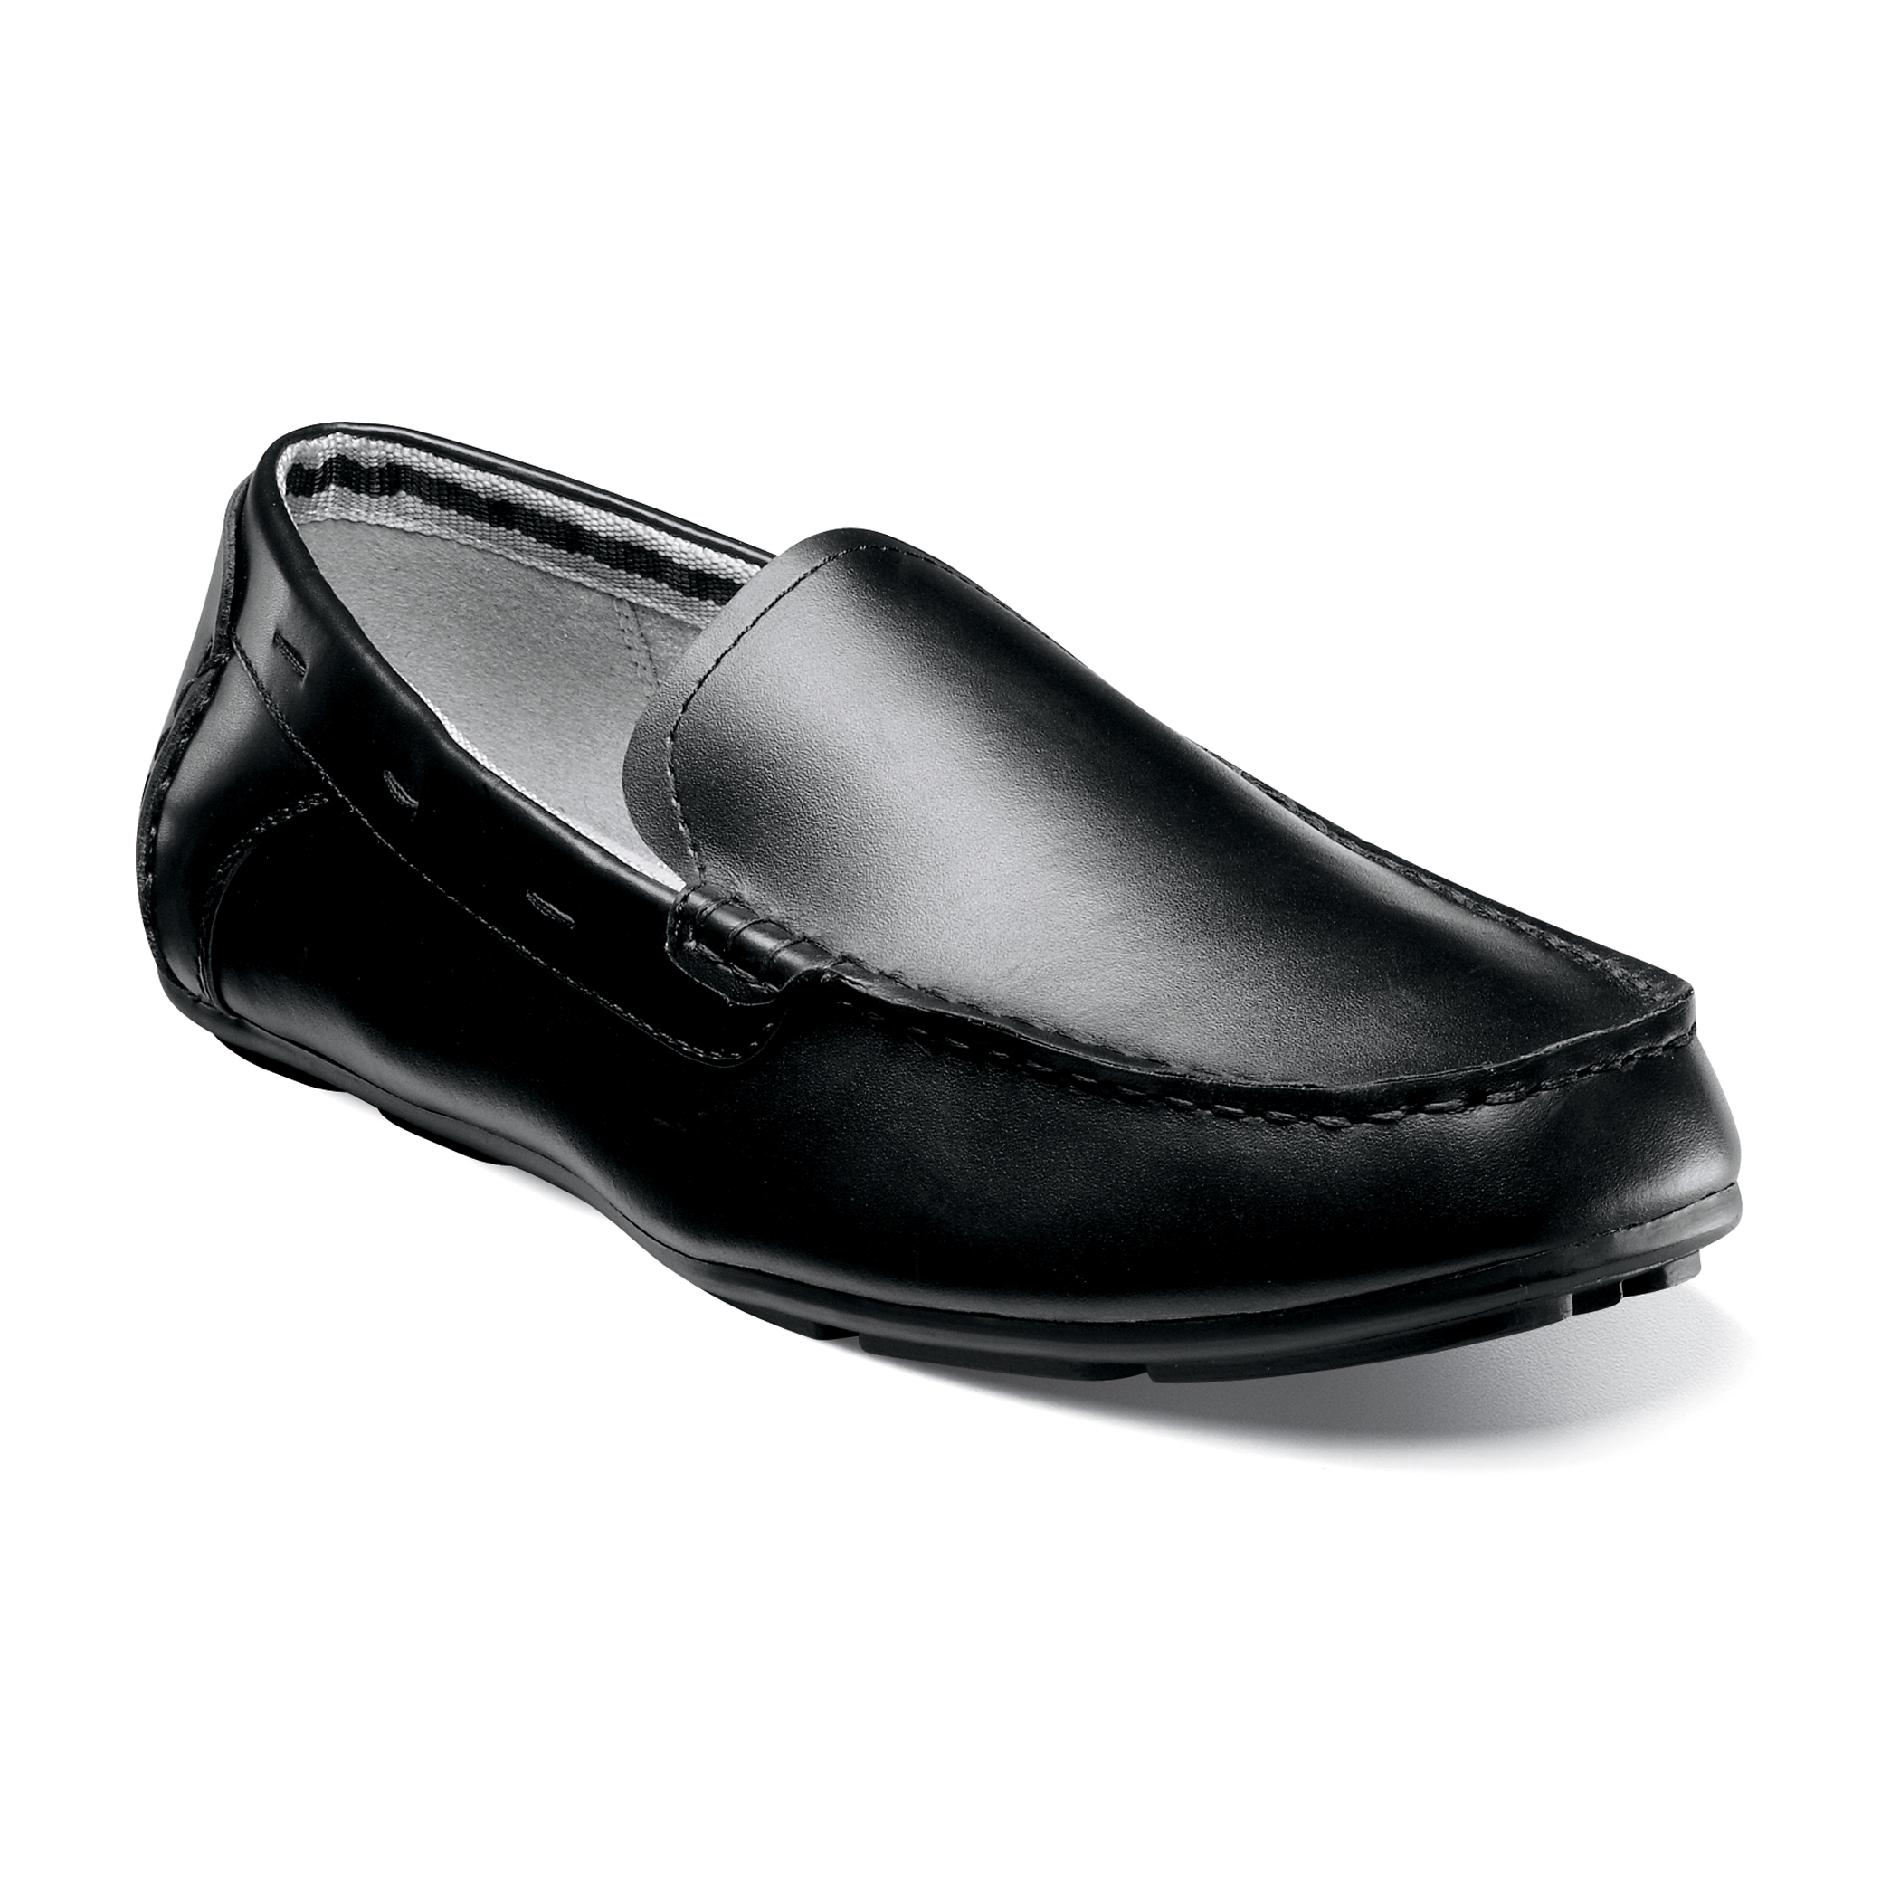 Nunn Bush Men's Hewitt Leather Loafer - Black